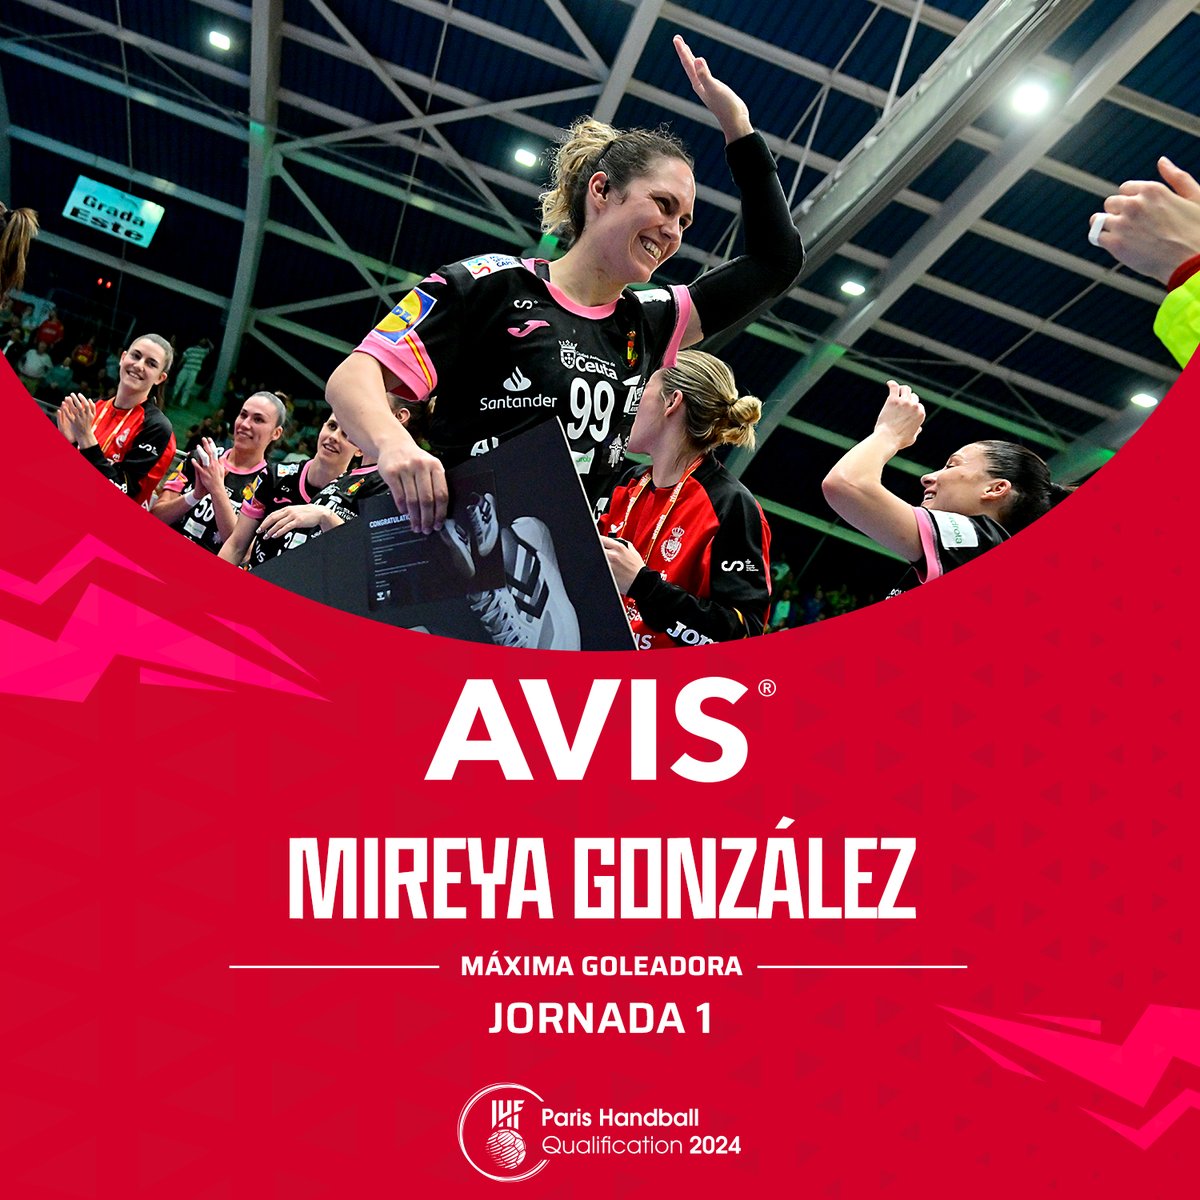 🎯 @Avis_Spain nos trae a la MÁXIMA 𝐆𝐎𝐋𝐄𝐀𝐃𝐎𝐑𝐀 de la Jornada de ayer en el Preolímpico

🔝 ¡Y el premio es para @MireyaGonzalez9 y sus 7⃣ goles con las #Guerreras 🇪🇸 ante República Checa 🇨🇿!

😄 ¡MVP! ¡MVP!

#TicketToParis #SheLovesHandball #Balonmano